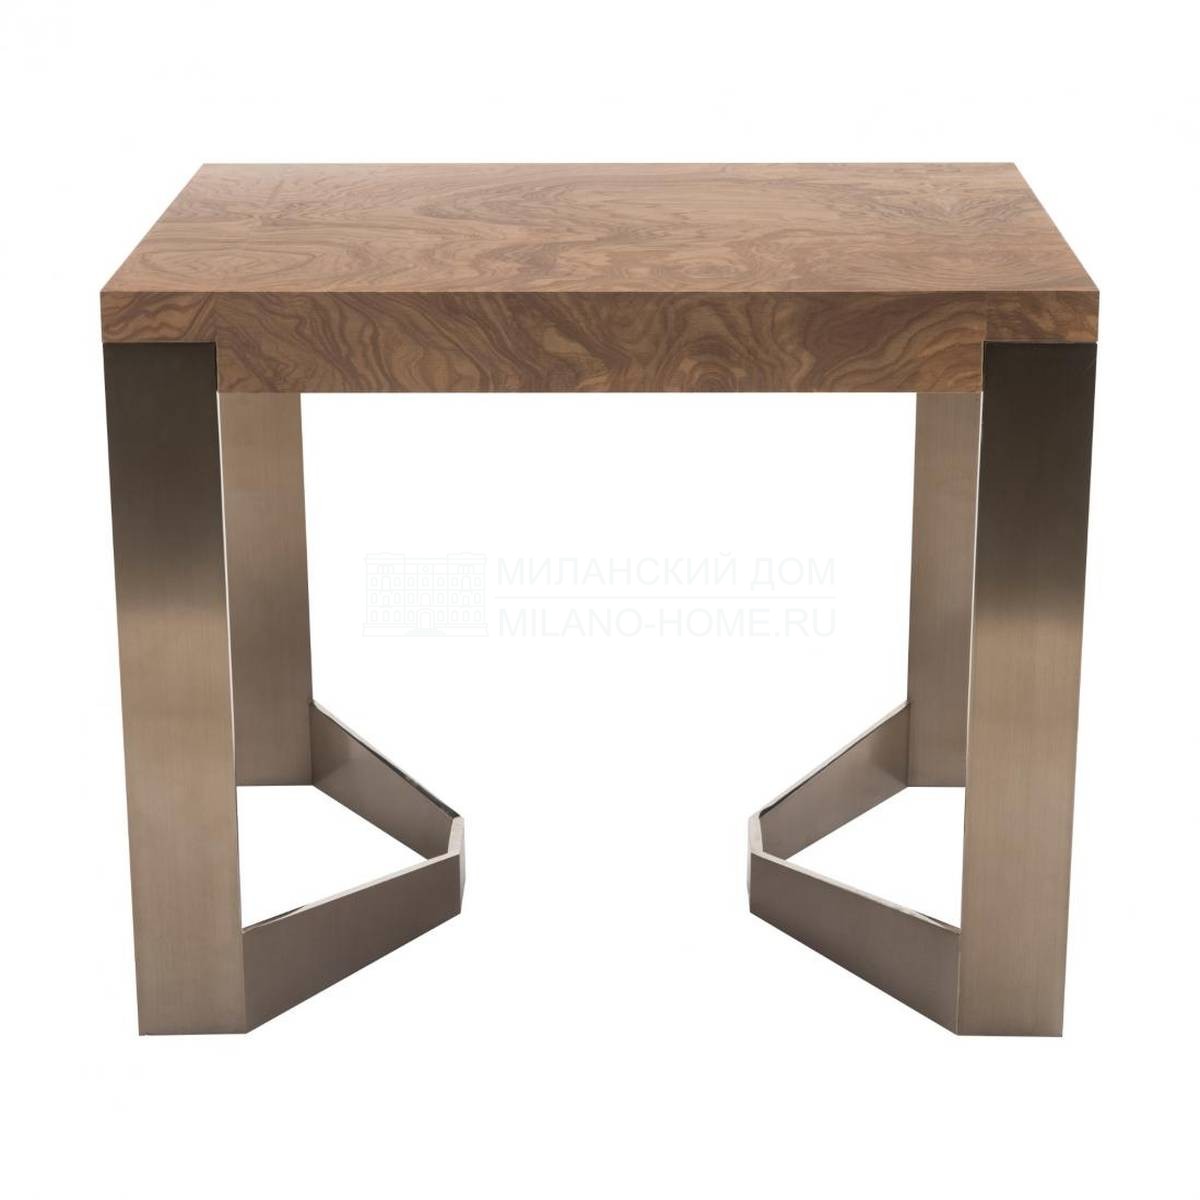 Кофейный столик Rex End Table из Италии фабрики RUBELLI Casa